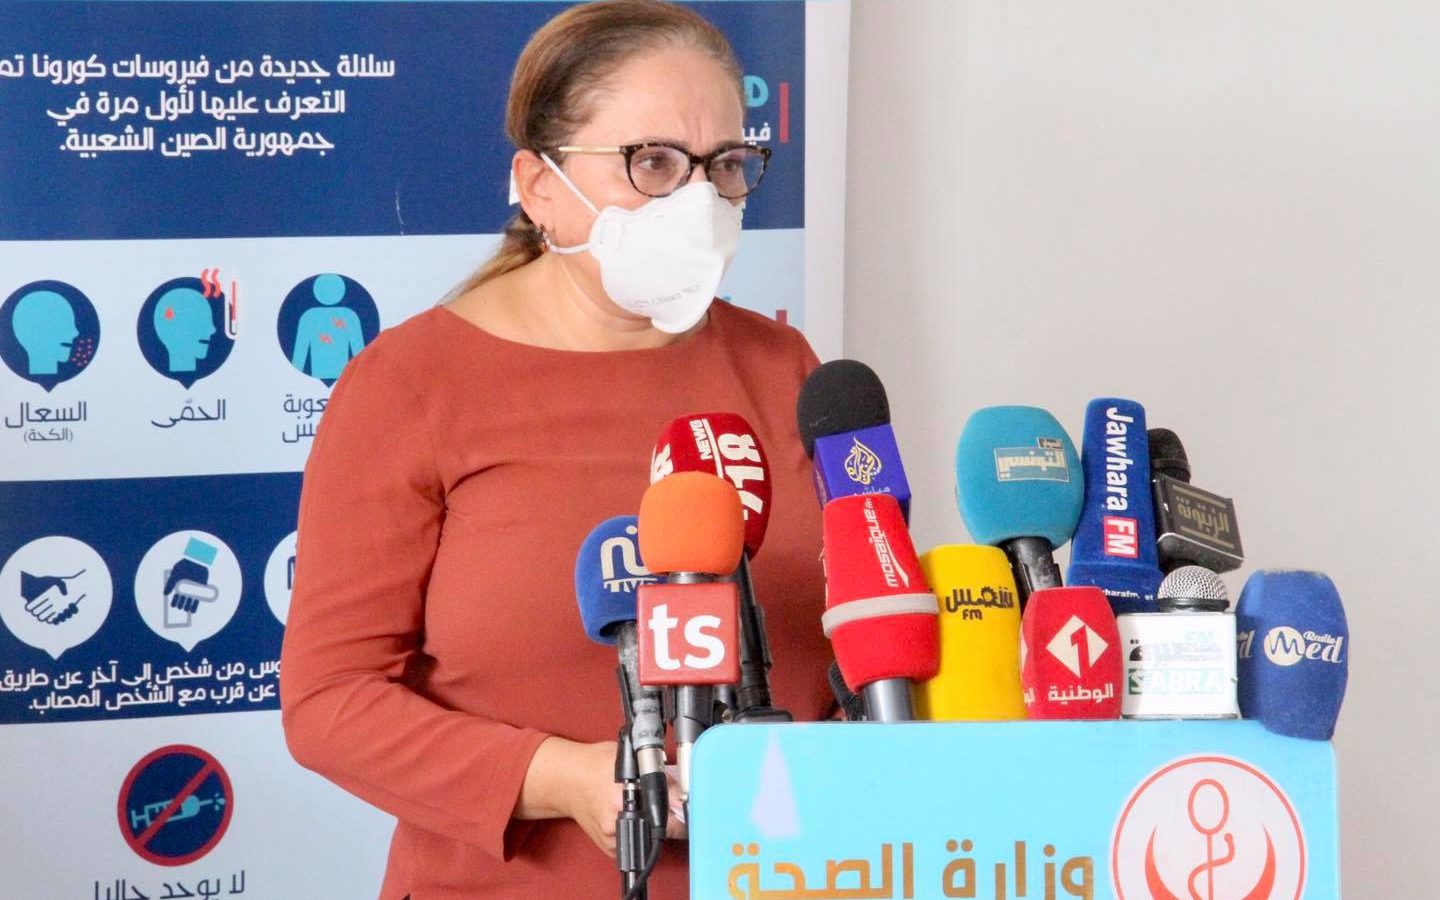 نصاف بن علية تتحدث عن تطورات الوضع الوبائي في تونس